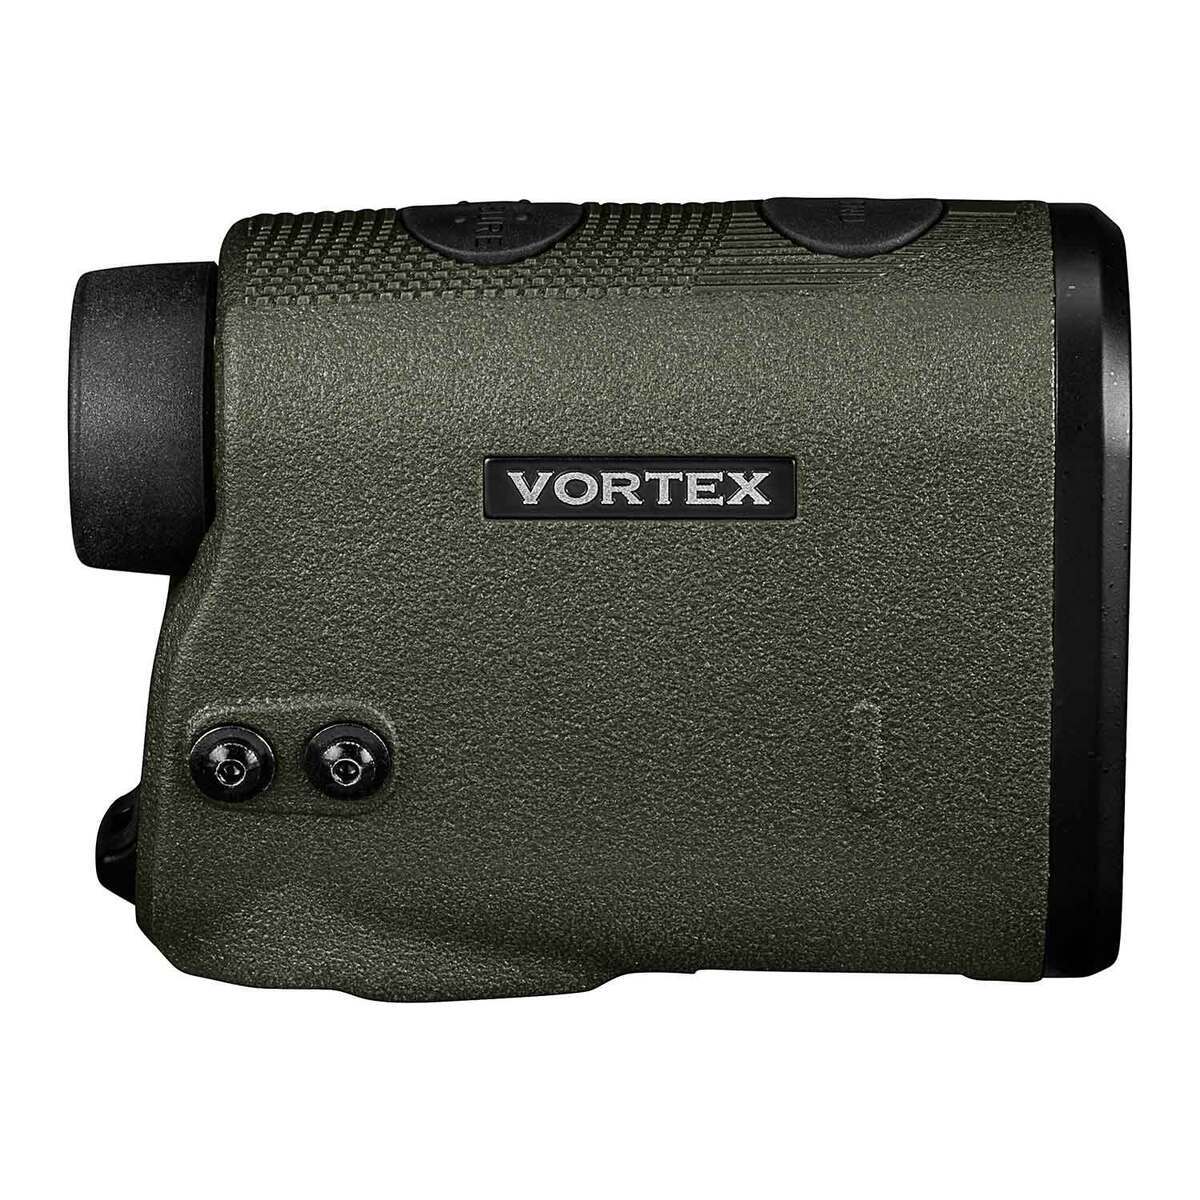 Vortex Diamondback HD 2000 Laser Rangefinder | Sportsman's Warehouse